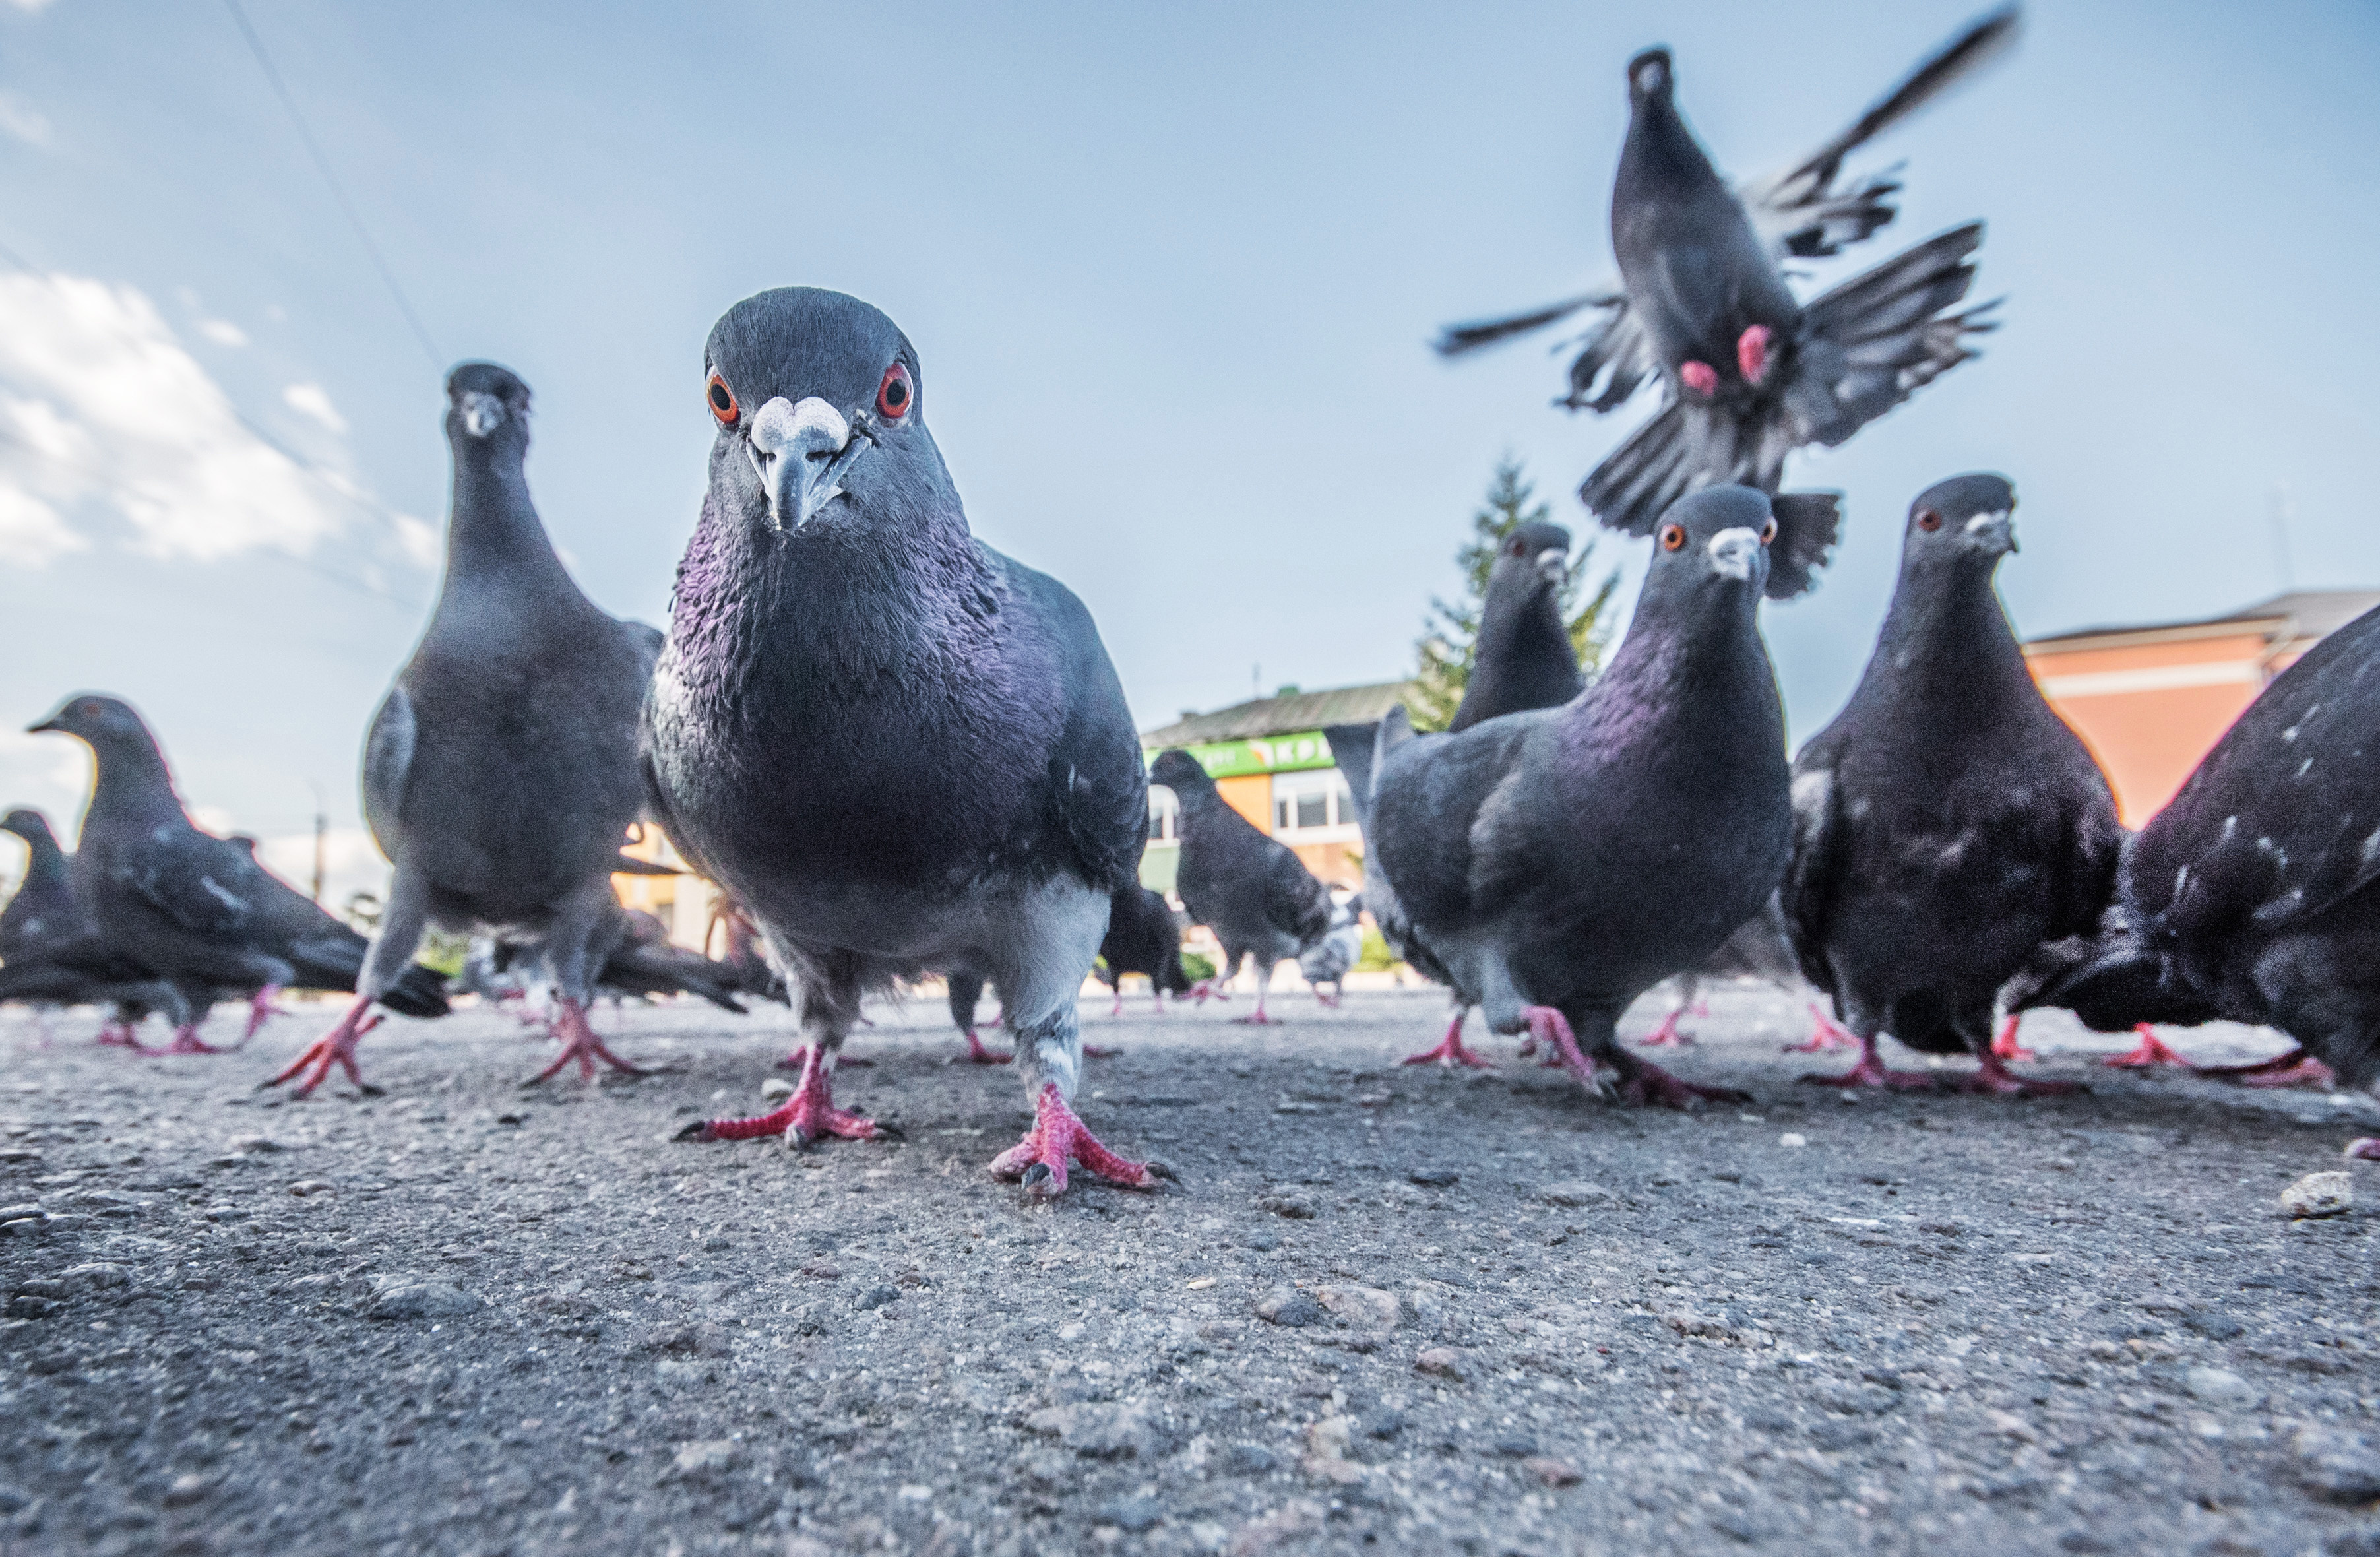 Les pigeons perdent régulièrement leurs doigts et pattes à cause des activités humaines : pollution et... coiffeurs ! © Rostyle, Adobe Stock